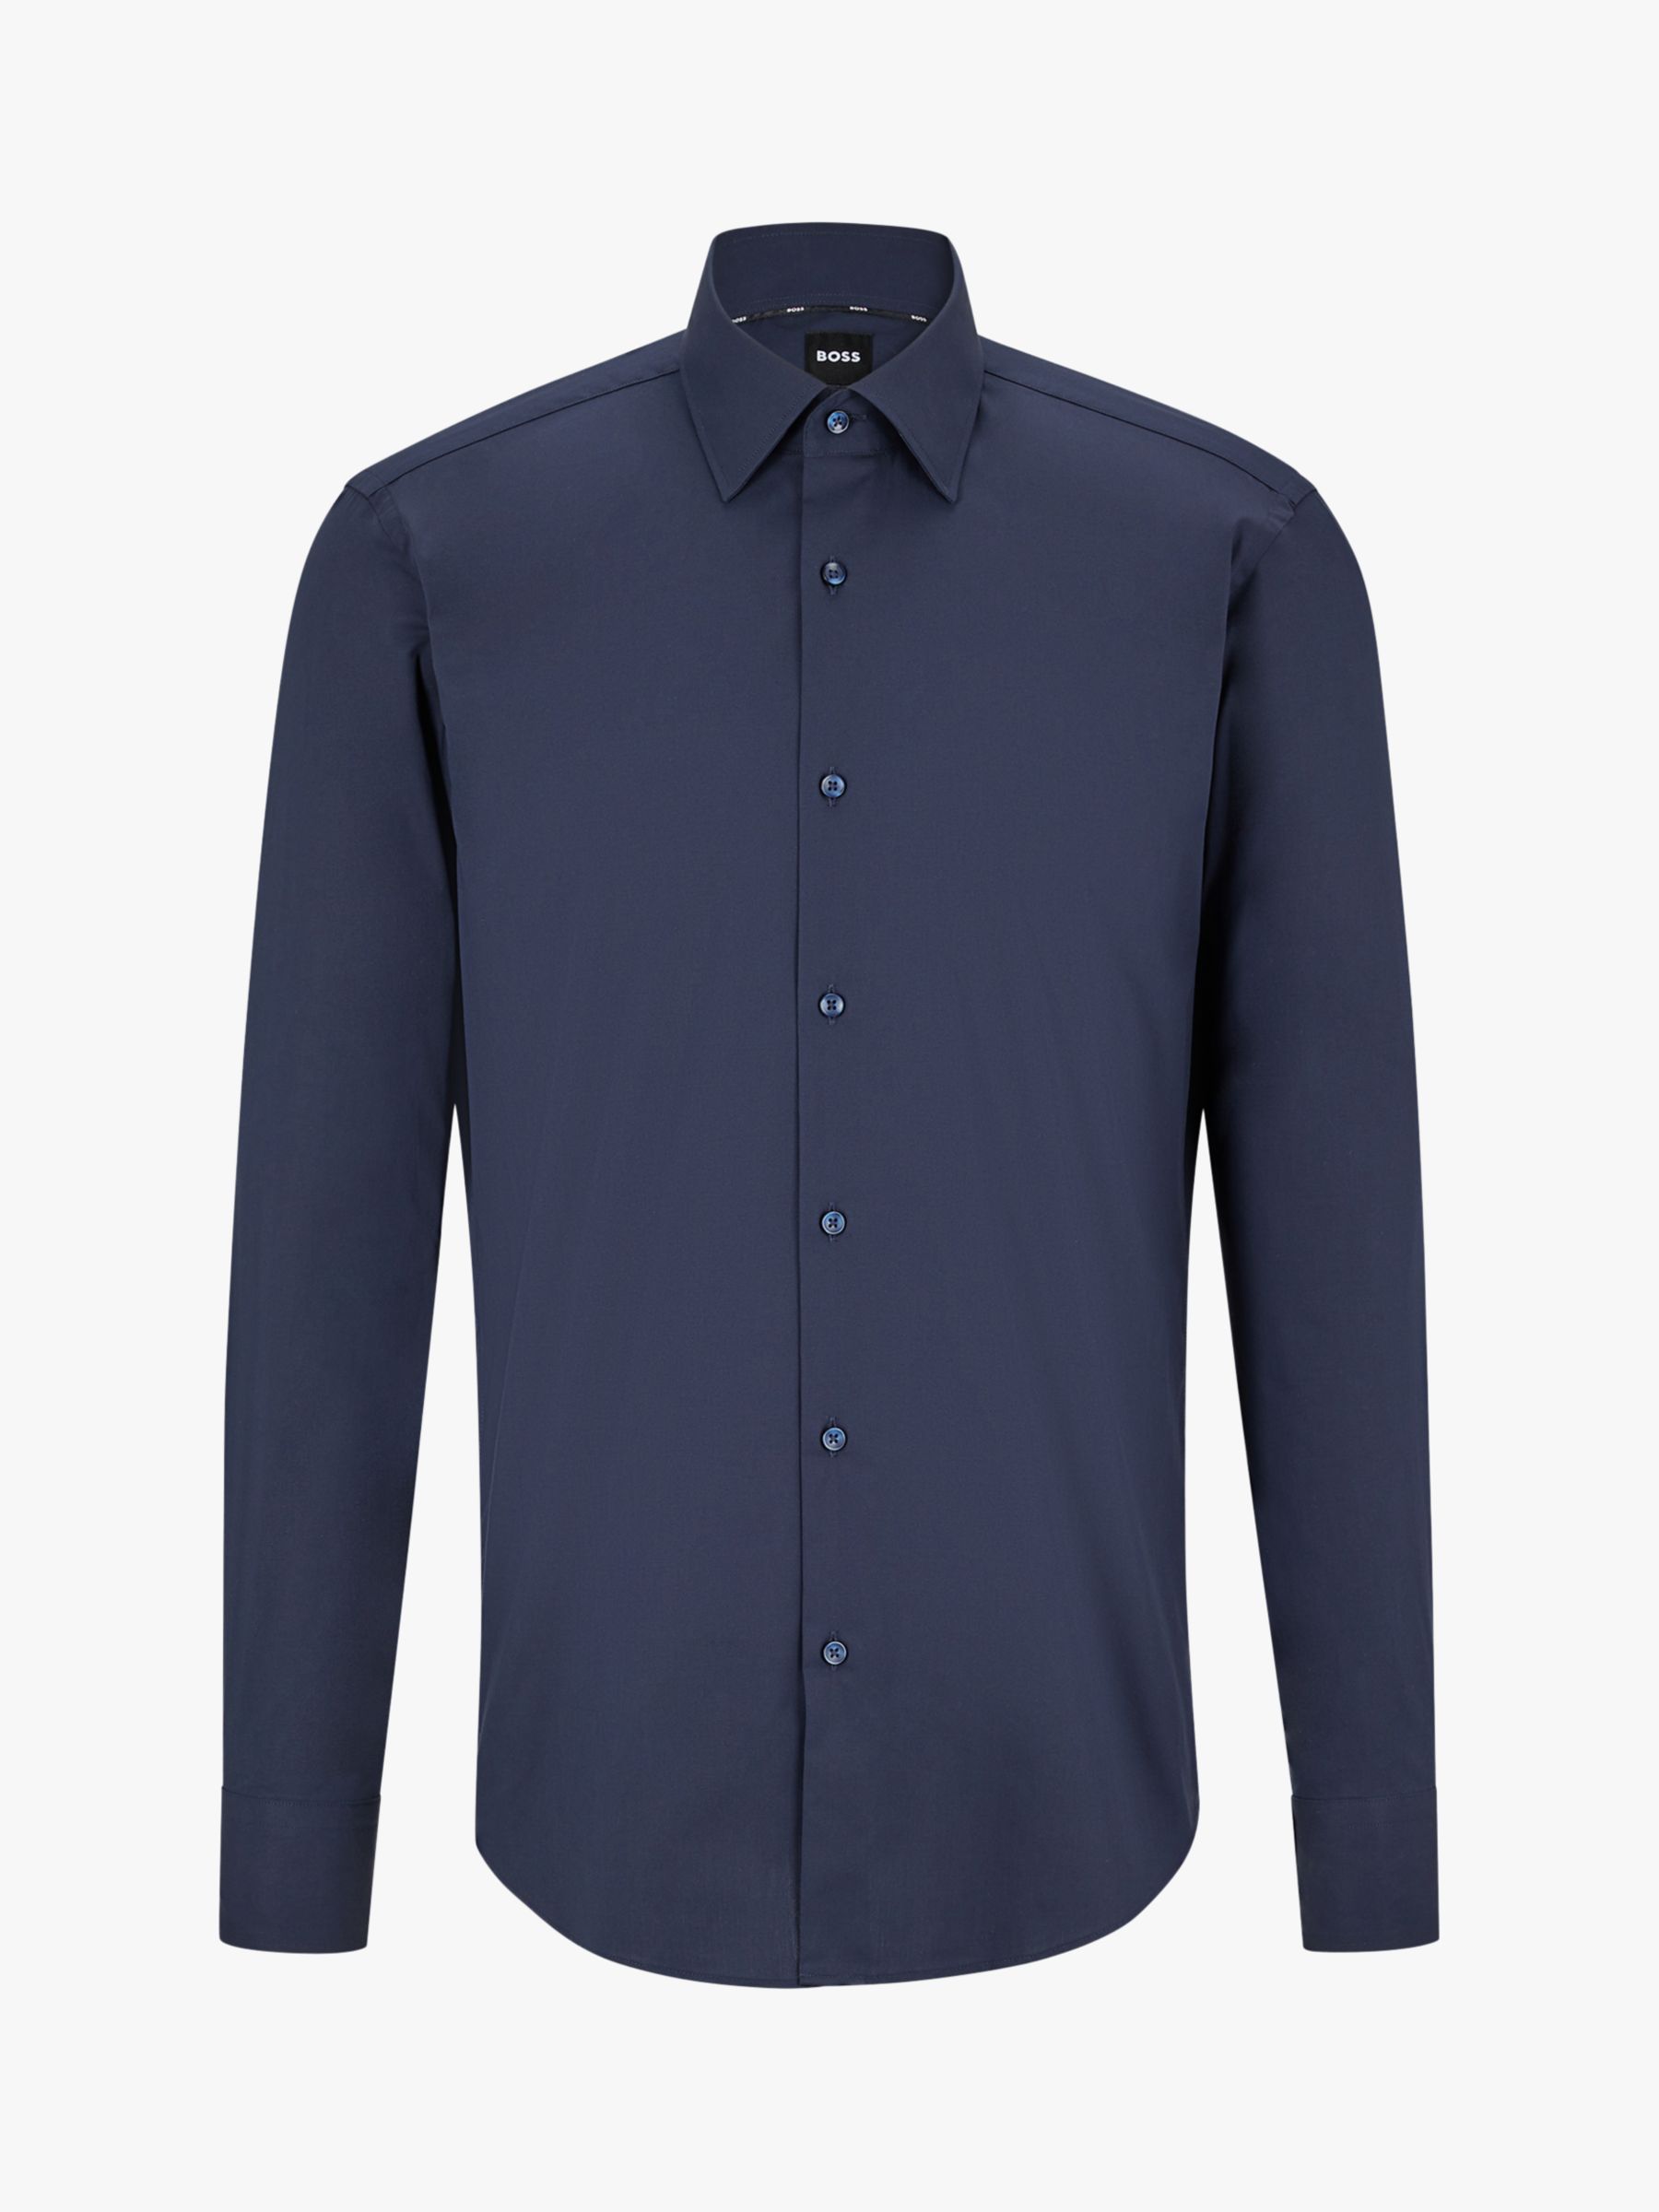 HUGO BOSS Joe Kent Regular Fit Shirt, Dark Blue at John Lewis & Partners